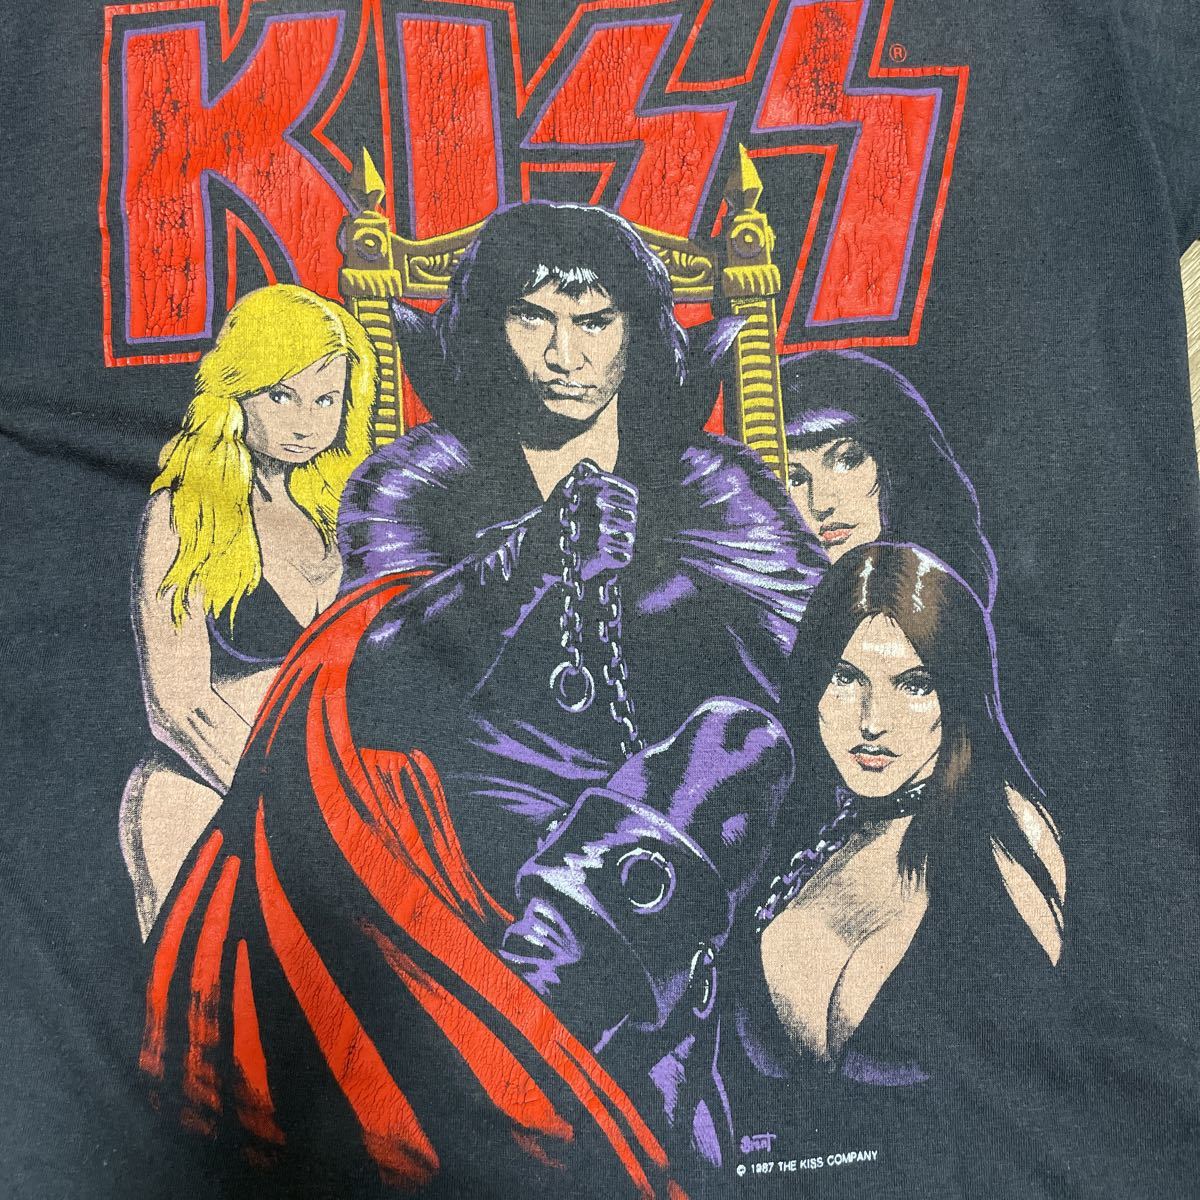  Vintage 1987 Kiss Gene Simmons It*s A Dirty Job Shirtkis блокировка футболка размер L соответствует редкость годы предмет черный чёрный 